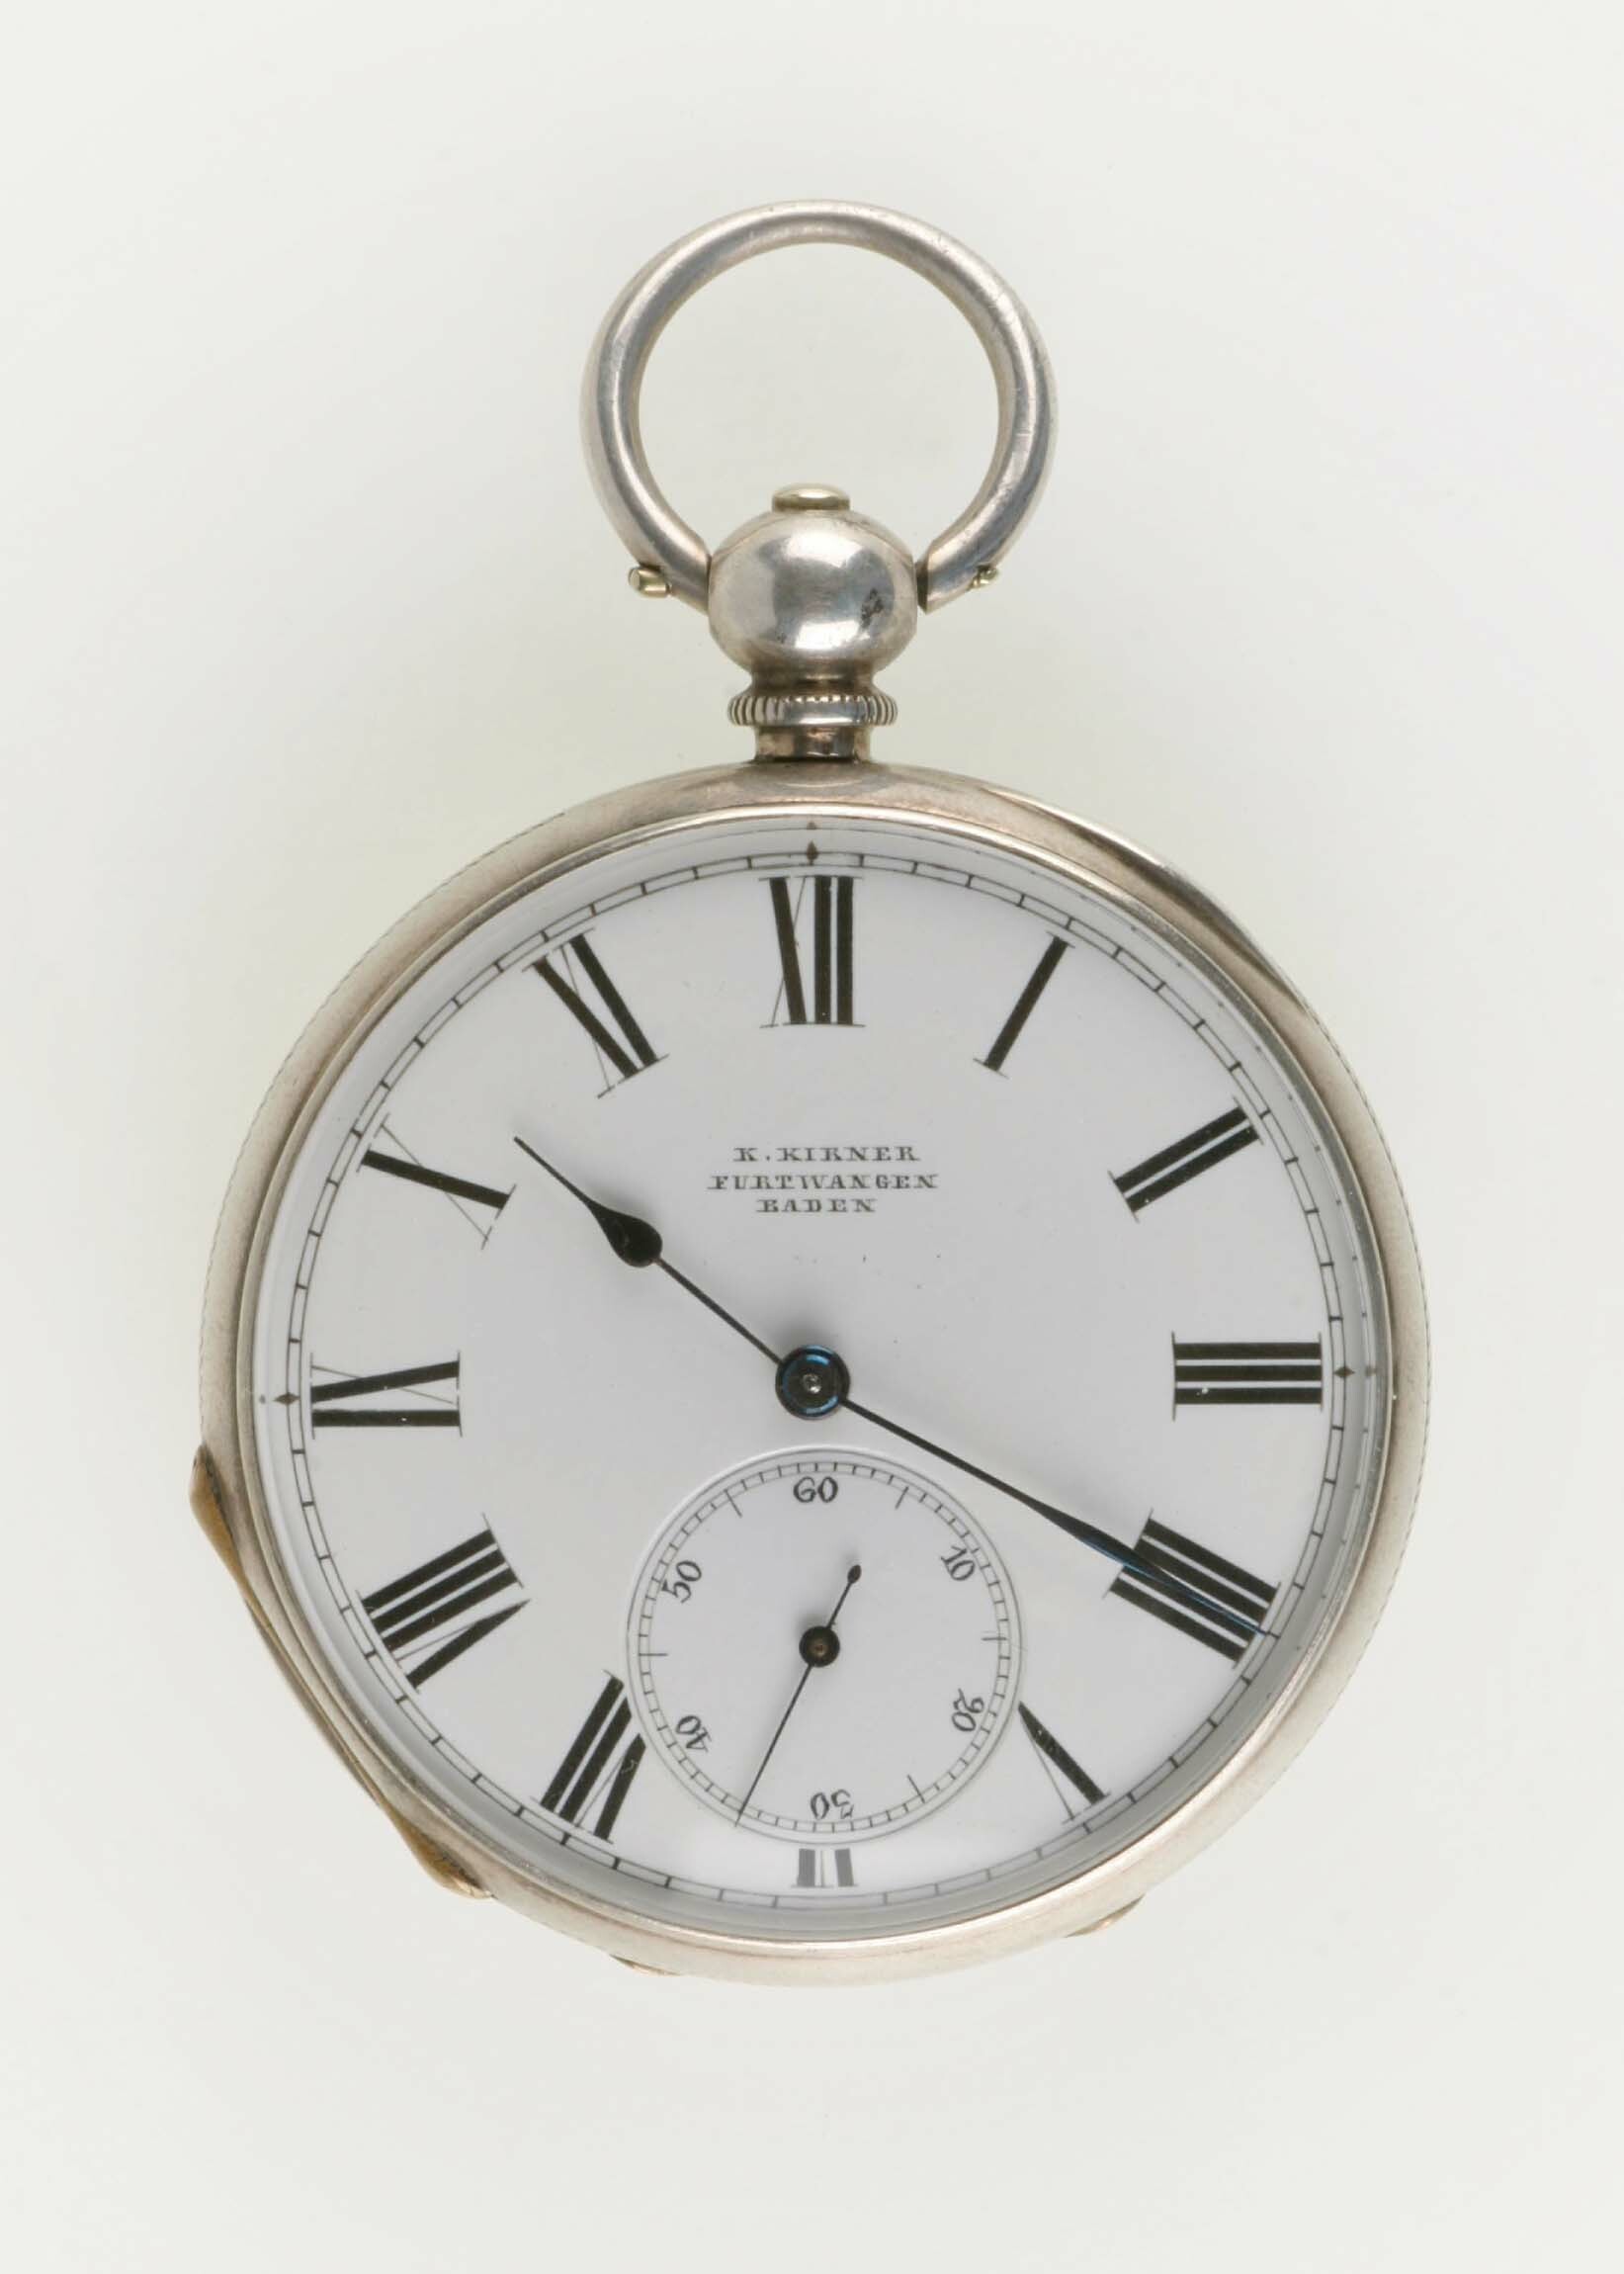 Taschenuhr, K. Kirner, Furtwangen, um 1860 (Deutsches Uhrenmuseum CC BY-SA)